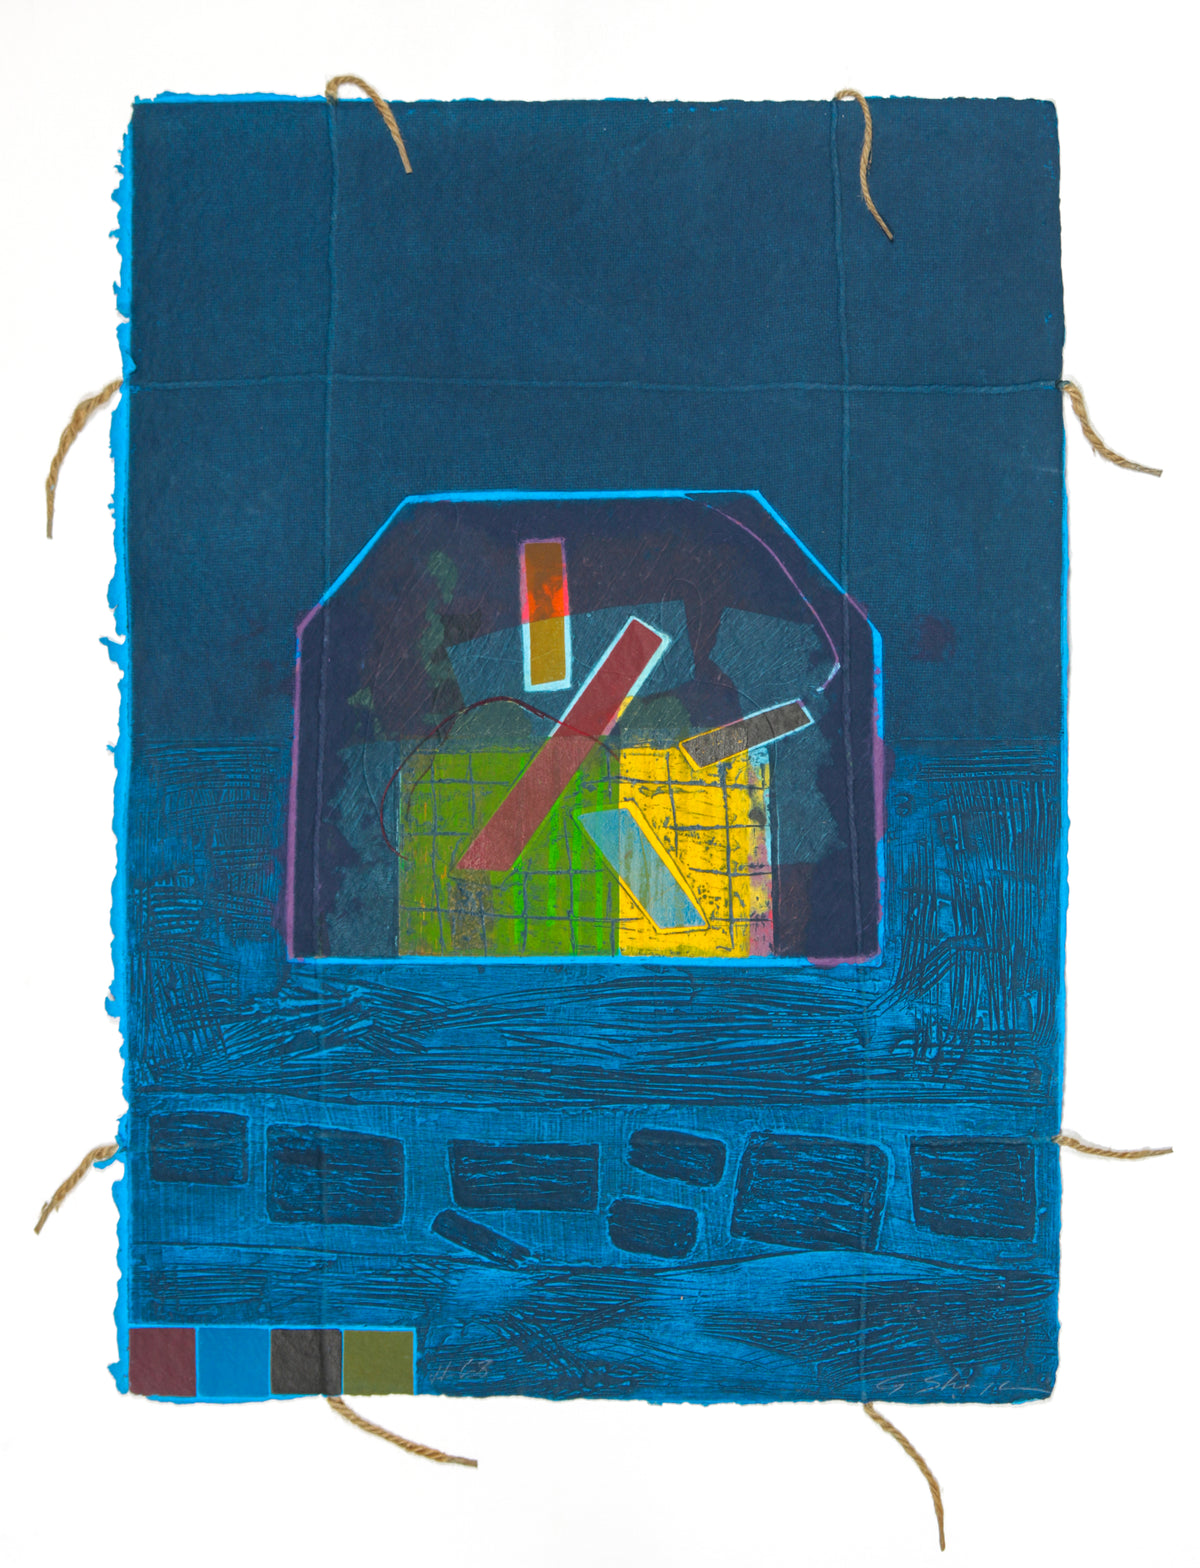 &lt;i&gt;#68&lt;/i&gt; &lt;br&gt;1984-1988 Collograph on Handmade Paper with String &lt;br&gt;&lt;br&gt;#93468